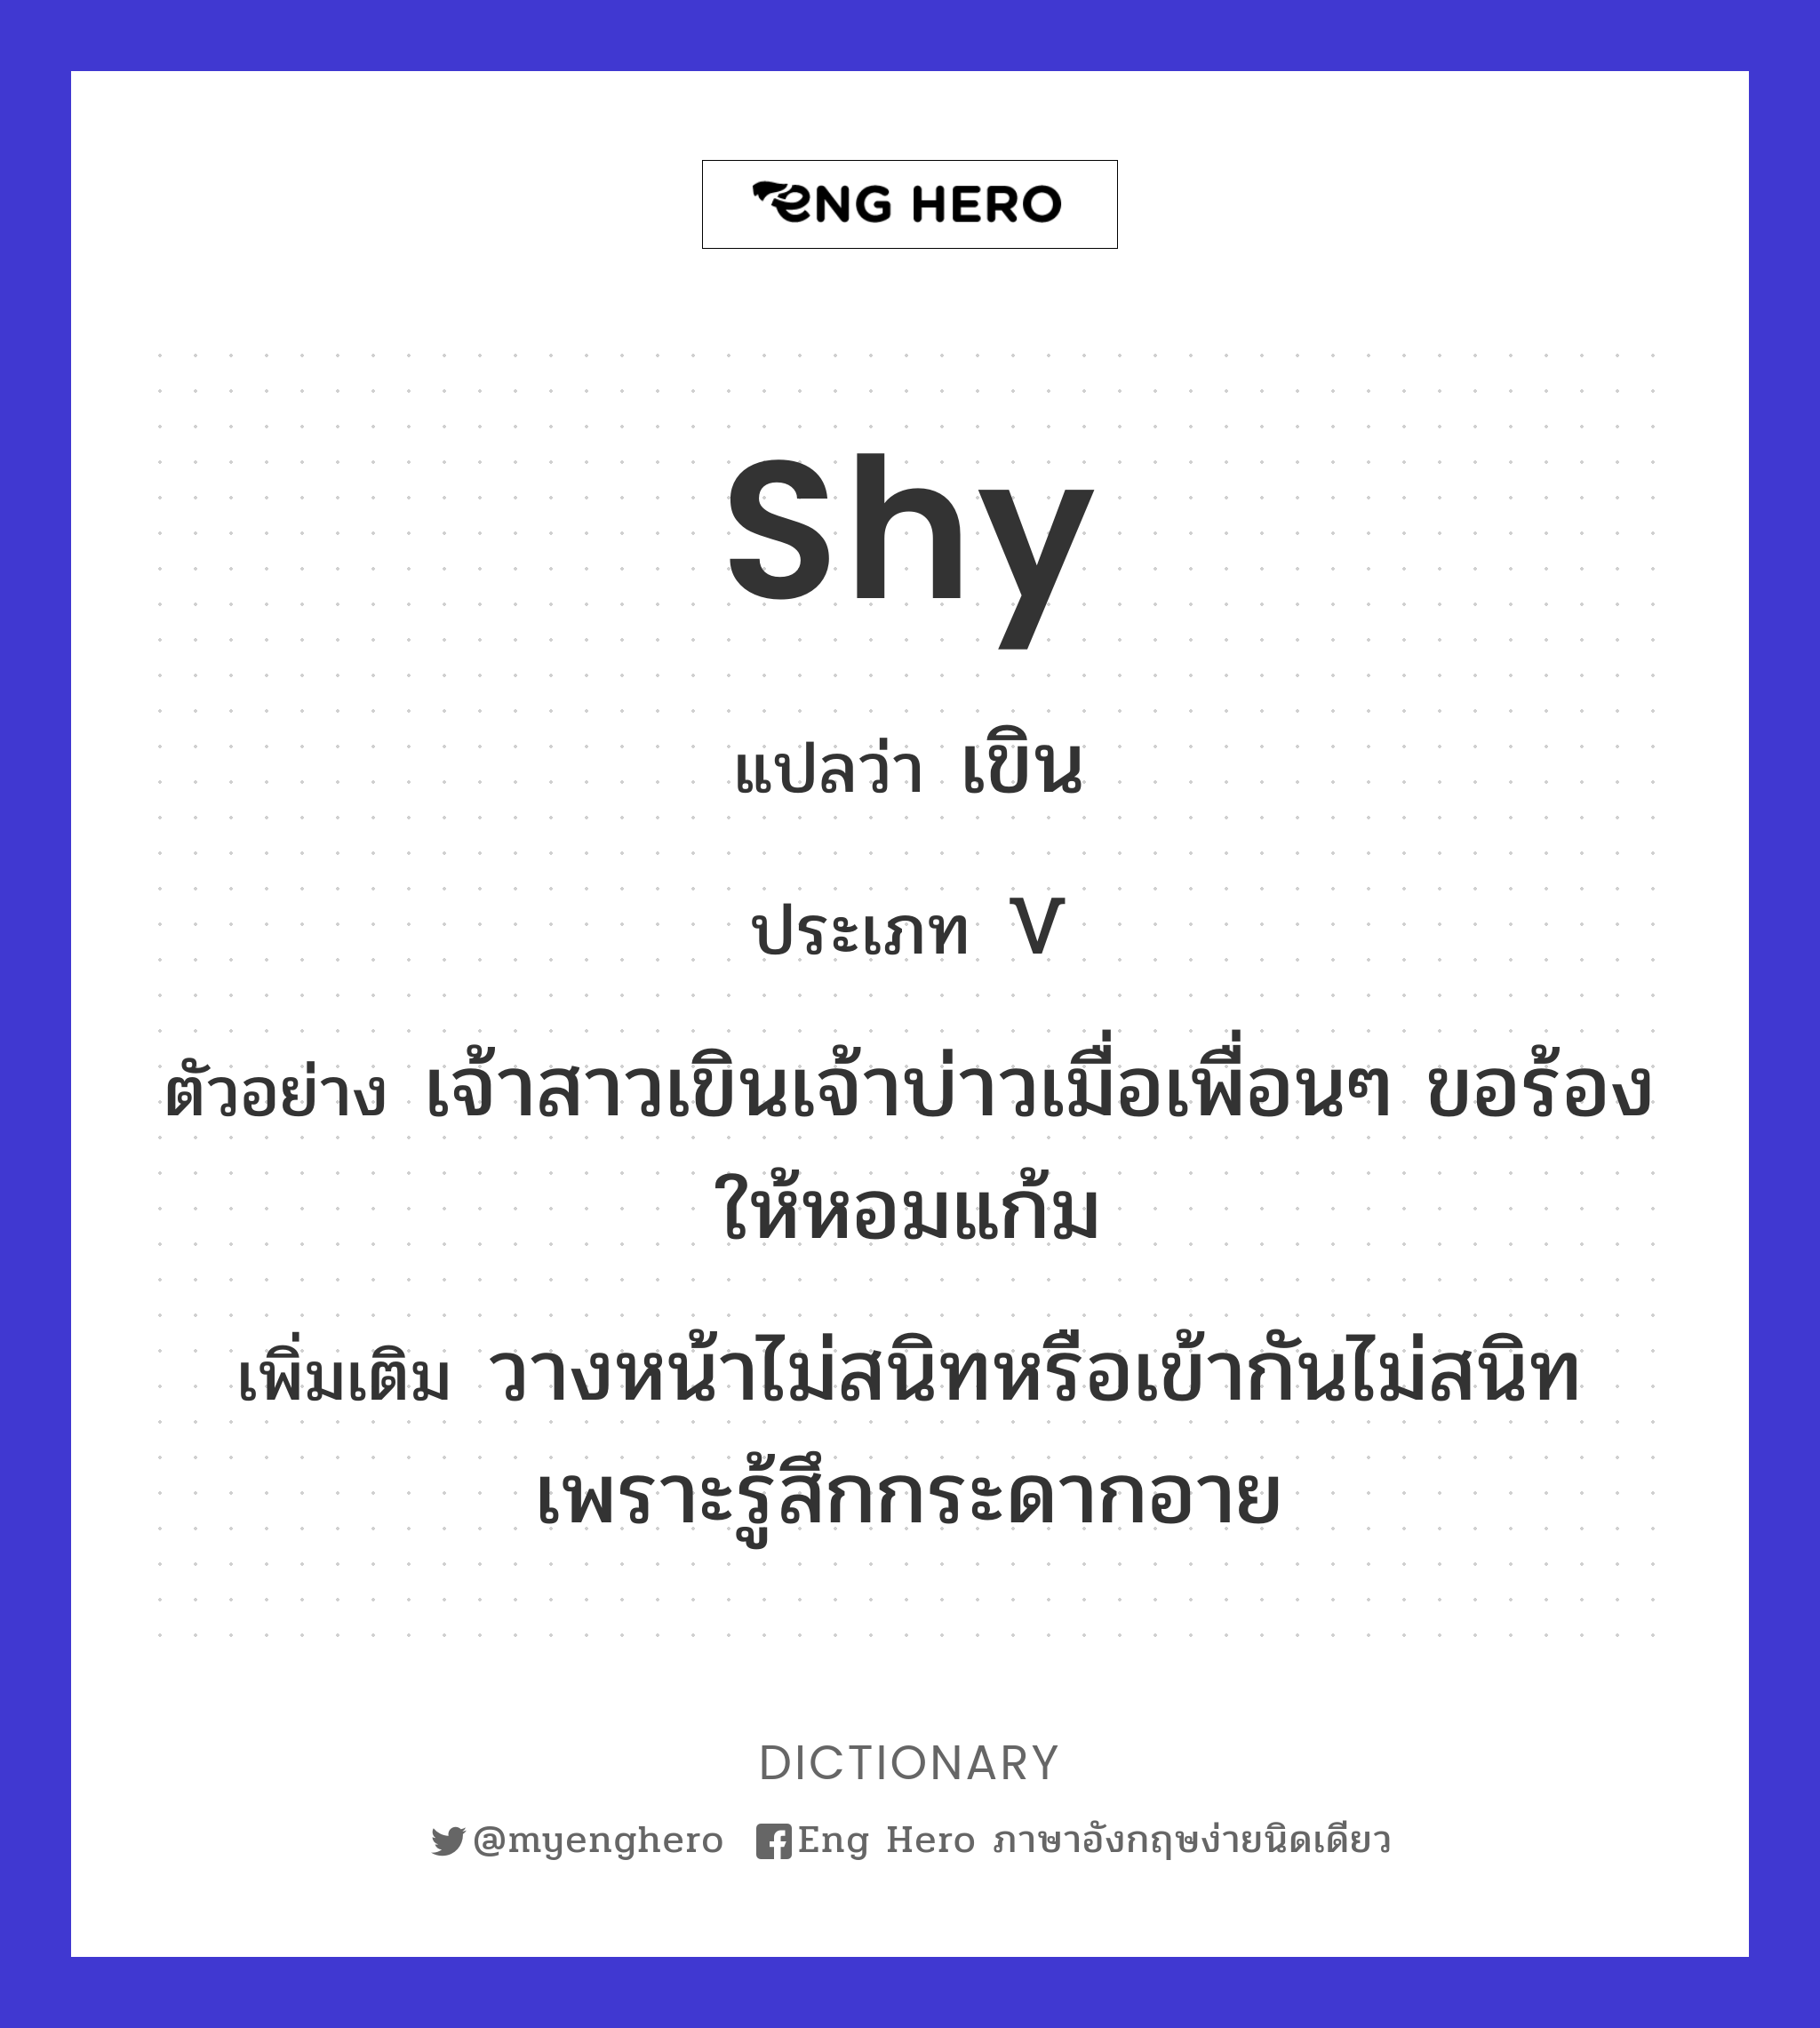 shy